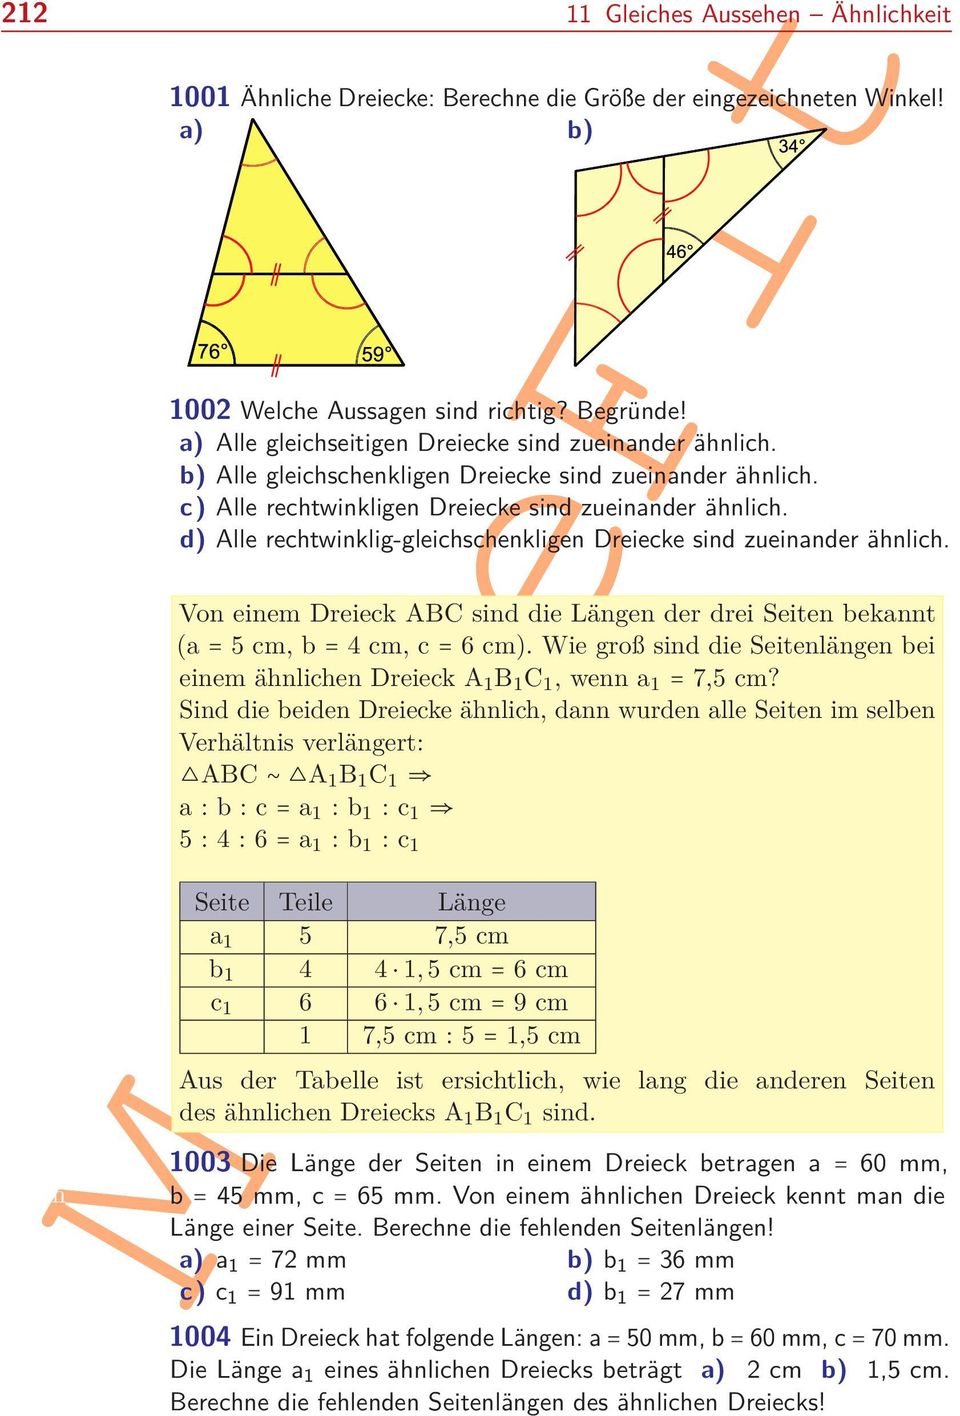 a) Alle gleichseitigen Dreiecke sind zueinander ähnlich. b) Alle gleichschenkligen Dreiecke sind zueinander ähnlich. c) Alle rechtwinkligen Dreiecke sind zueinander ähnlich.